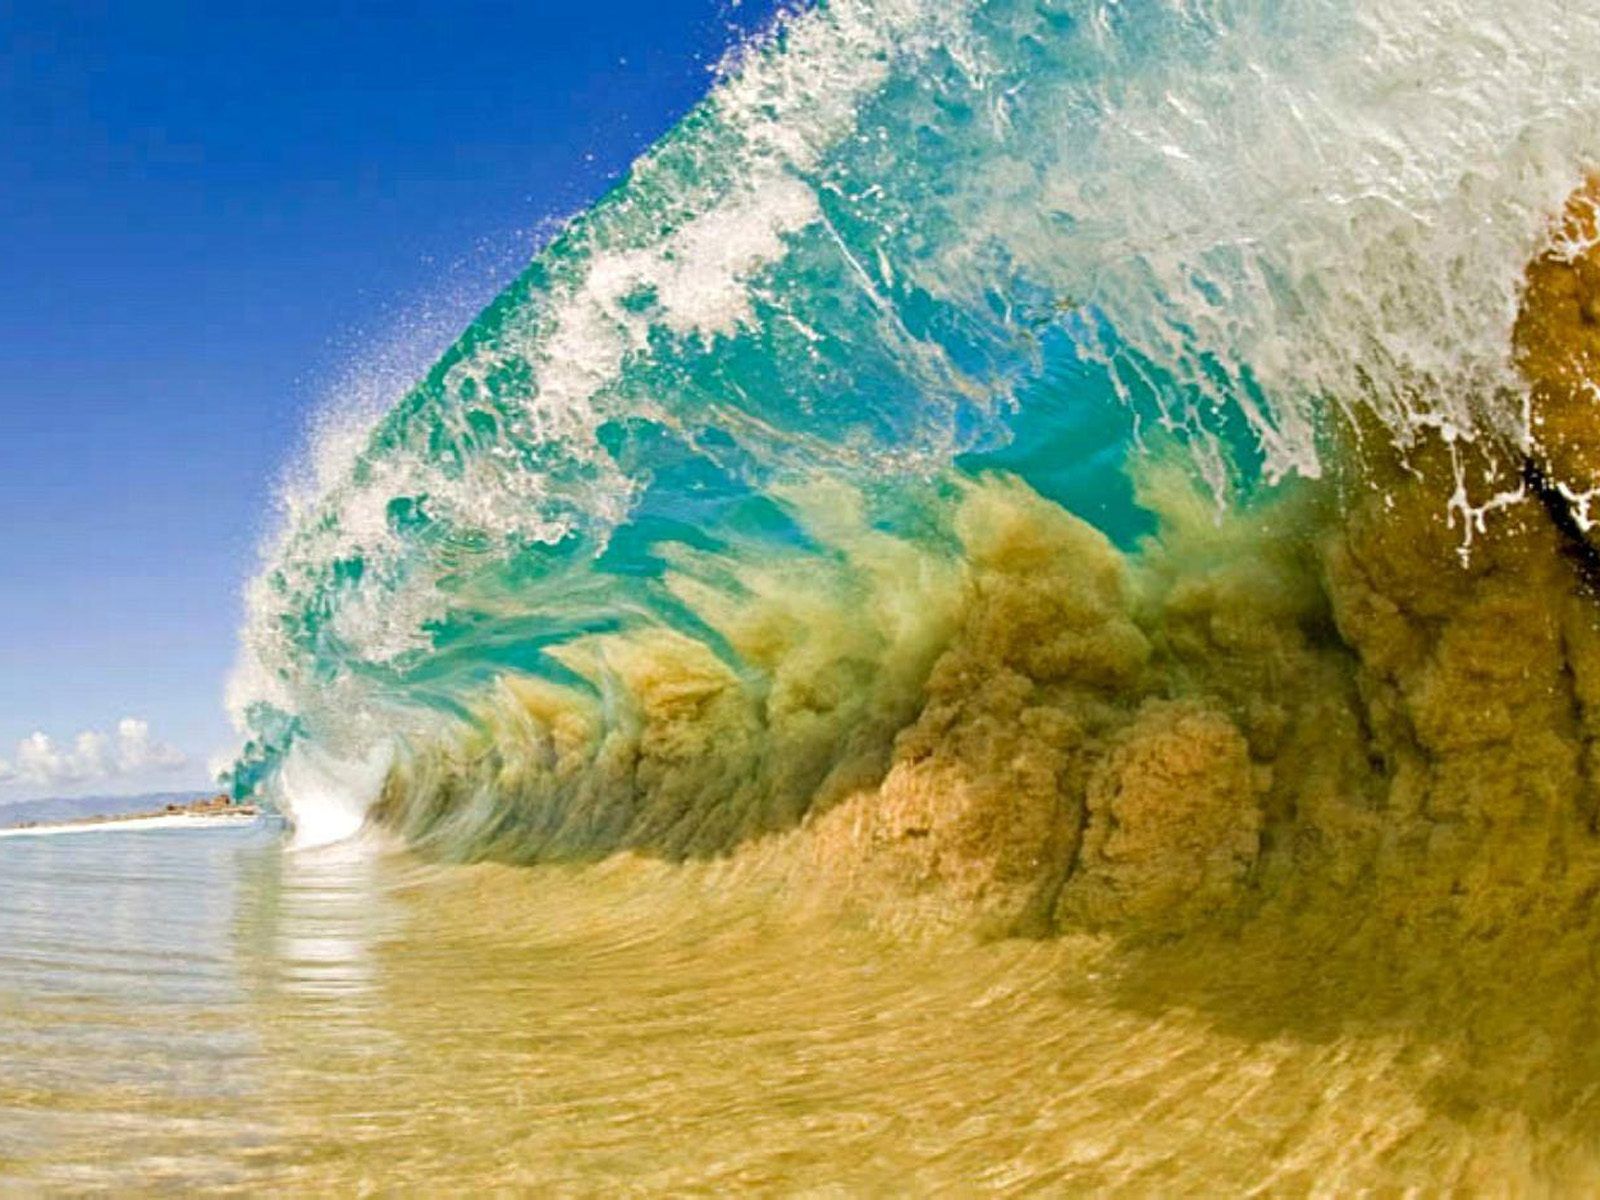 Summer Waves Wallpaper. Beach Waves Wallpaper, Cape Cod Waves Wallpaper and Waves Wallpaper